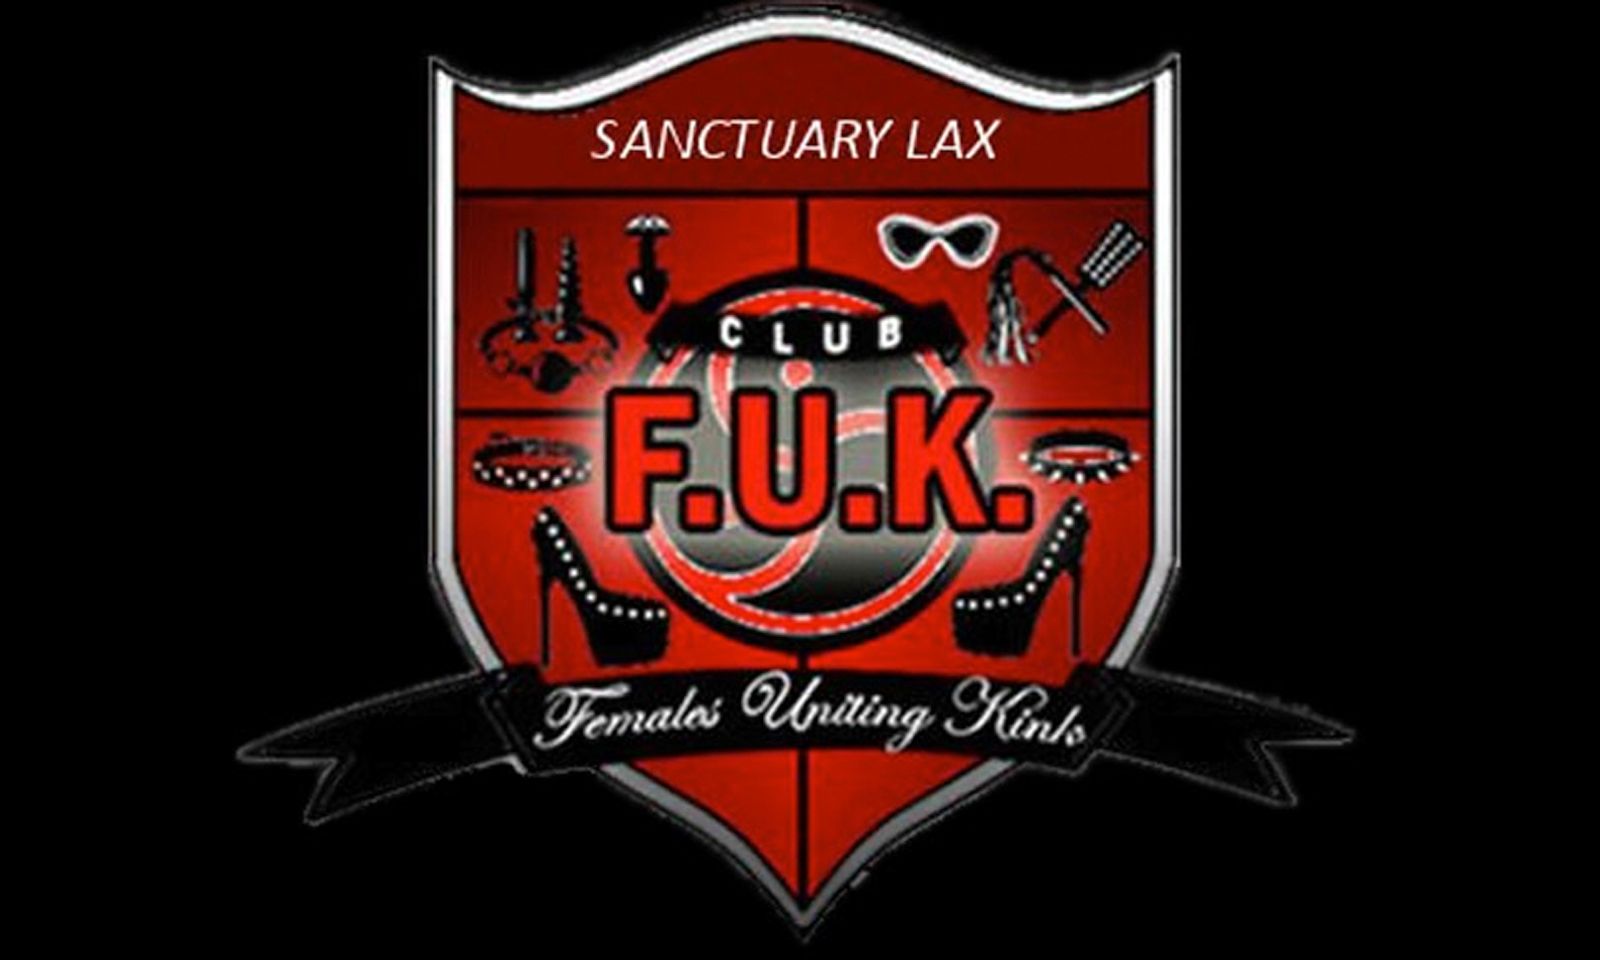 Head Back To School With Club F.U.K. at Sanctuary LAX